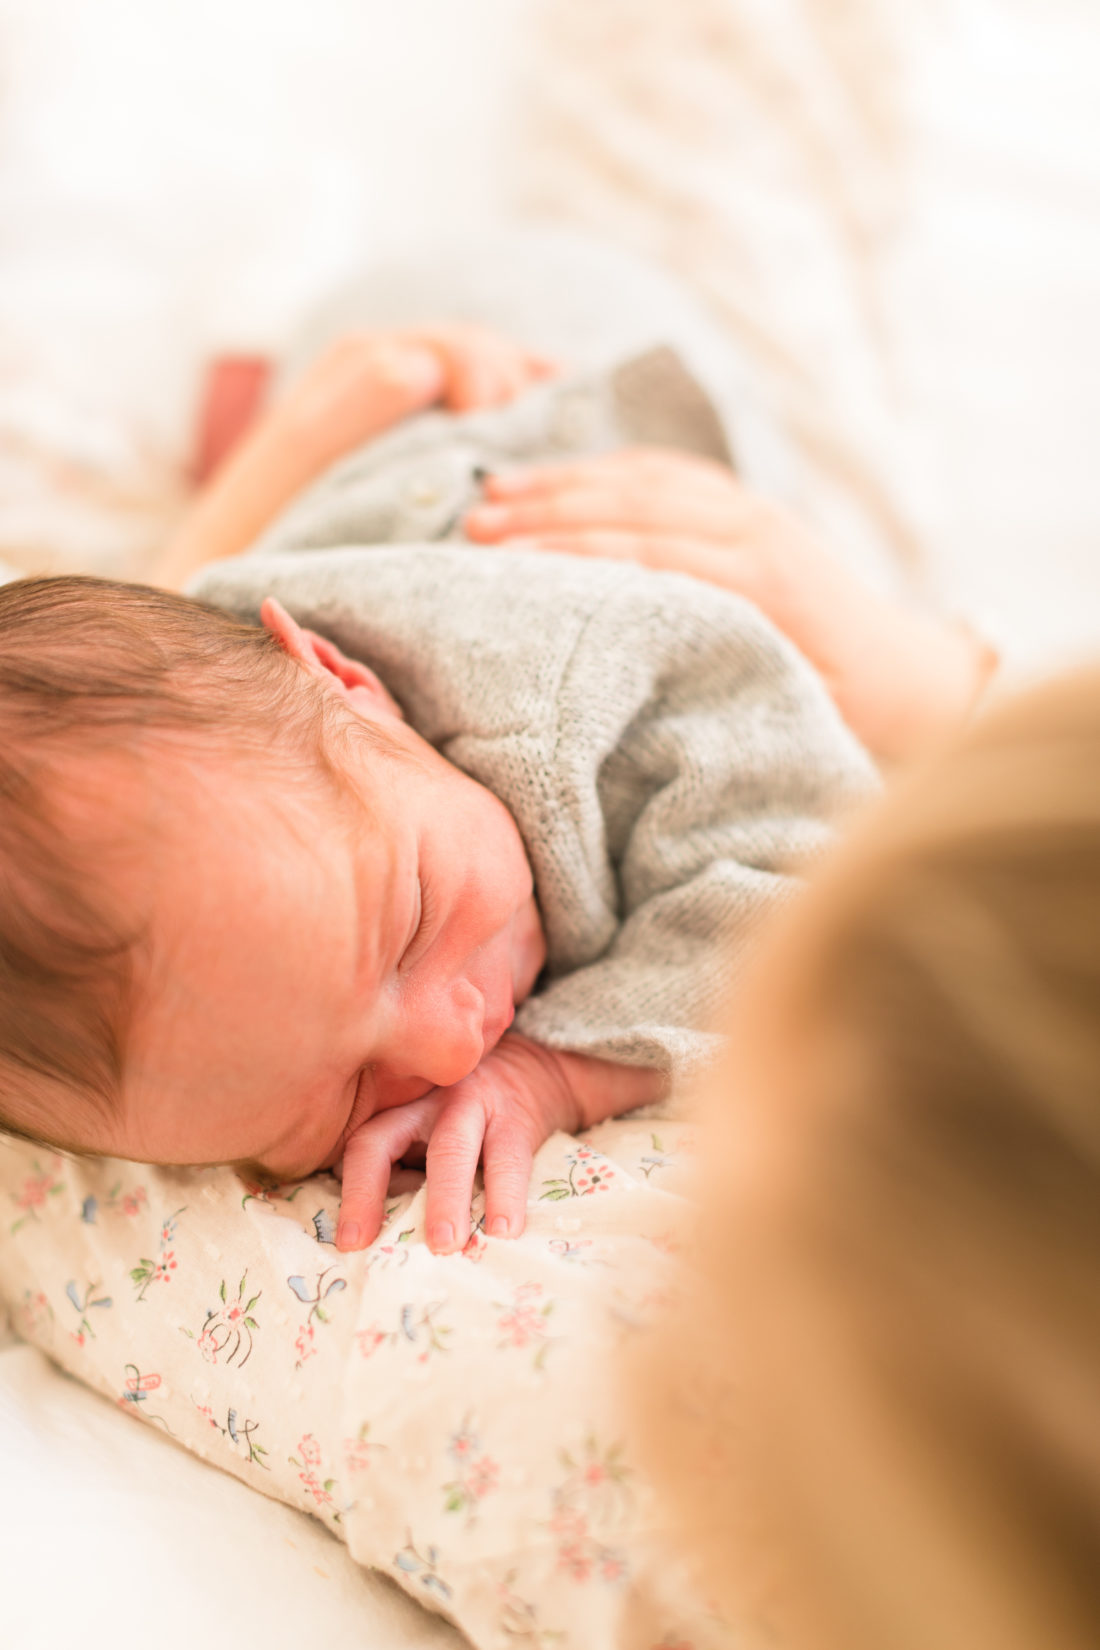 Eva Amurri shares the details of her newborn schedule from 0-3 months